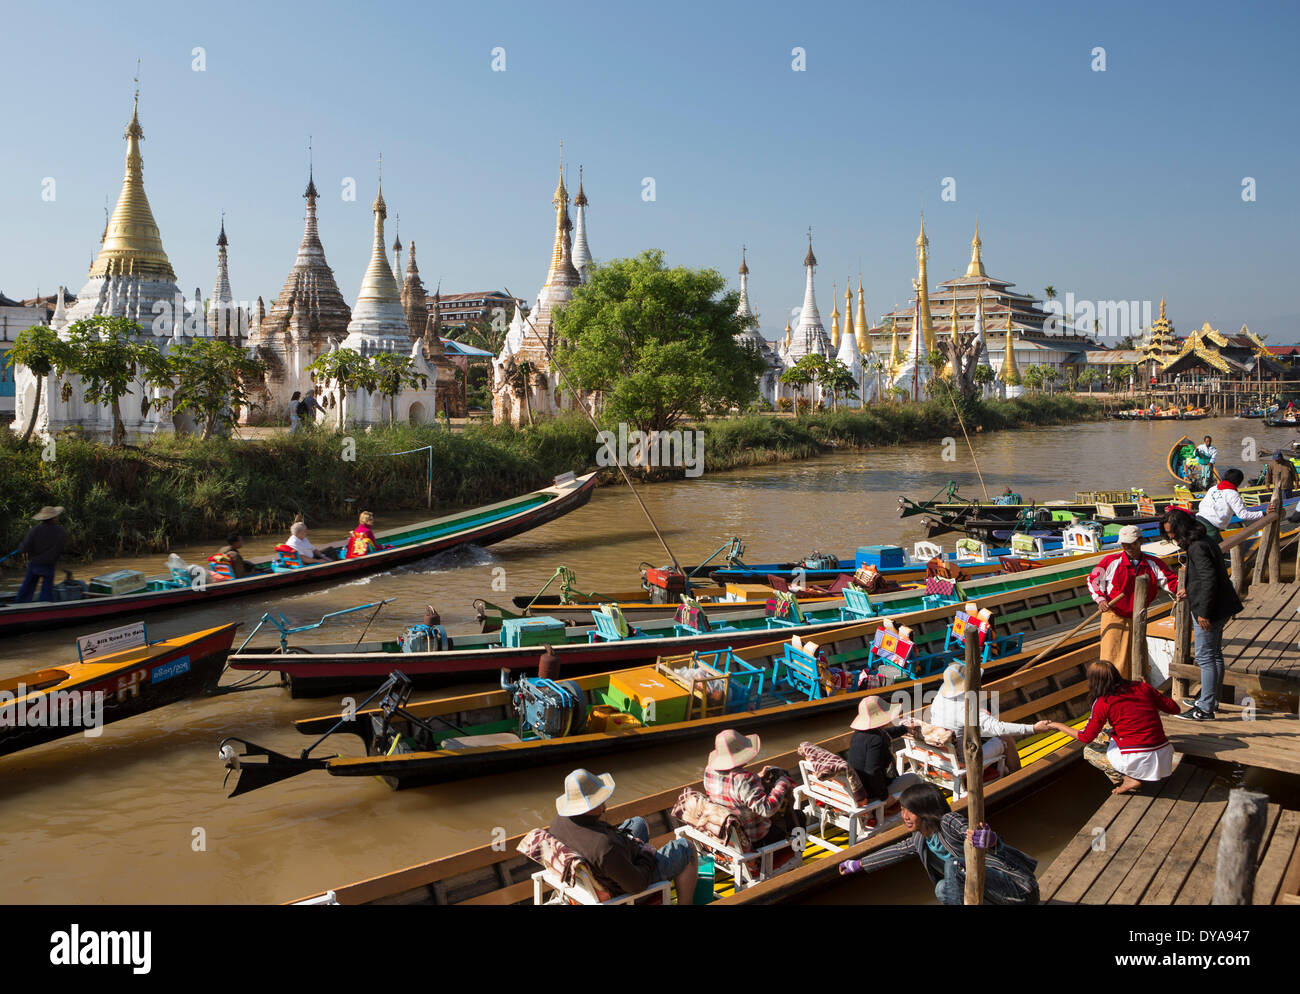 Iwama Ville Asie Birmanie Myanmar bateau bateaux flottant du canal du lac Inle skyline touristes touristique stupas tr transport Banque D'Images